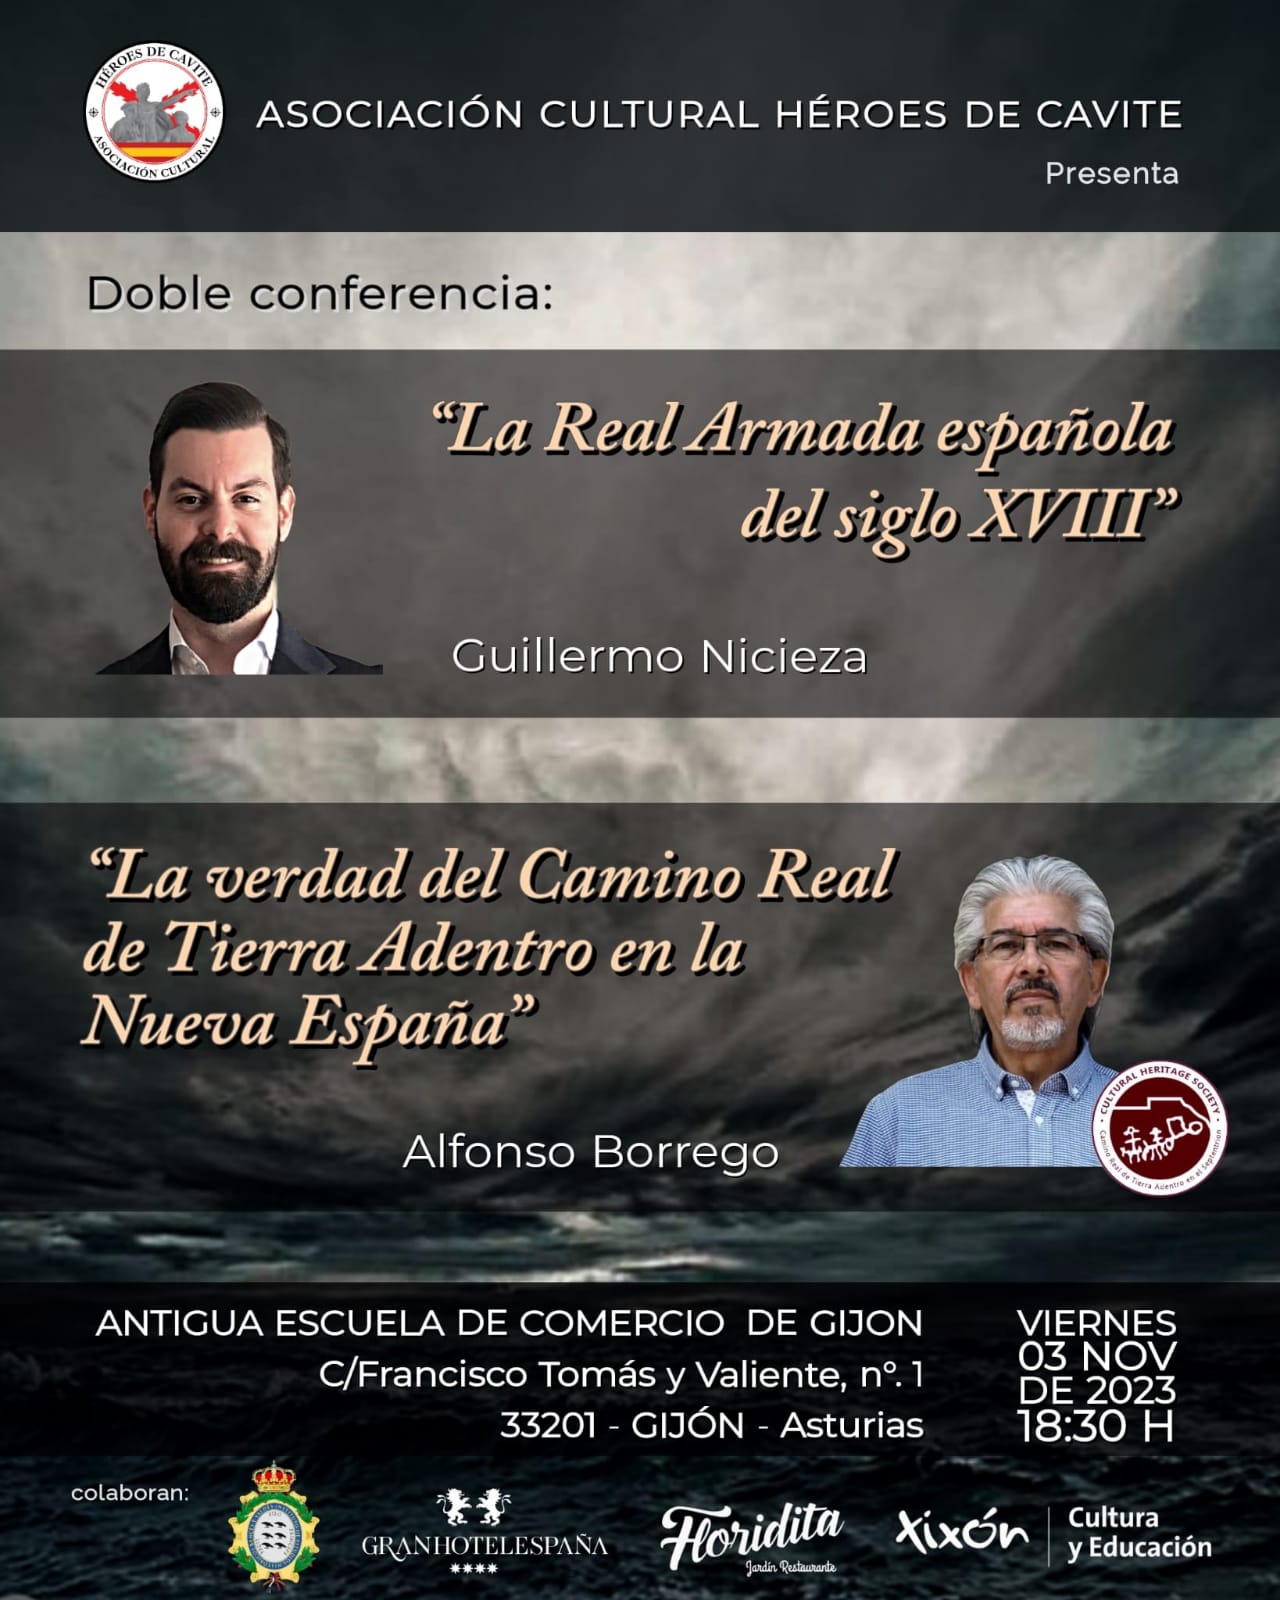 Cartel promocional de la doble conferencia en Gijón